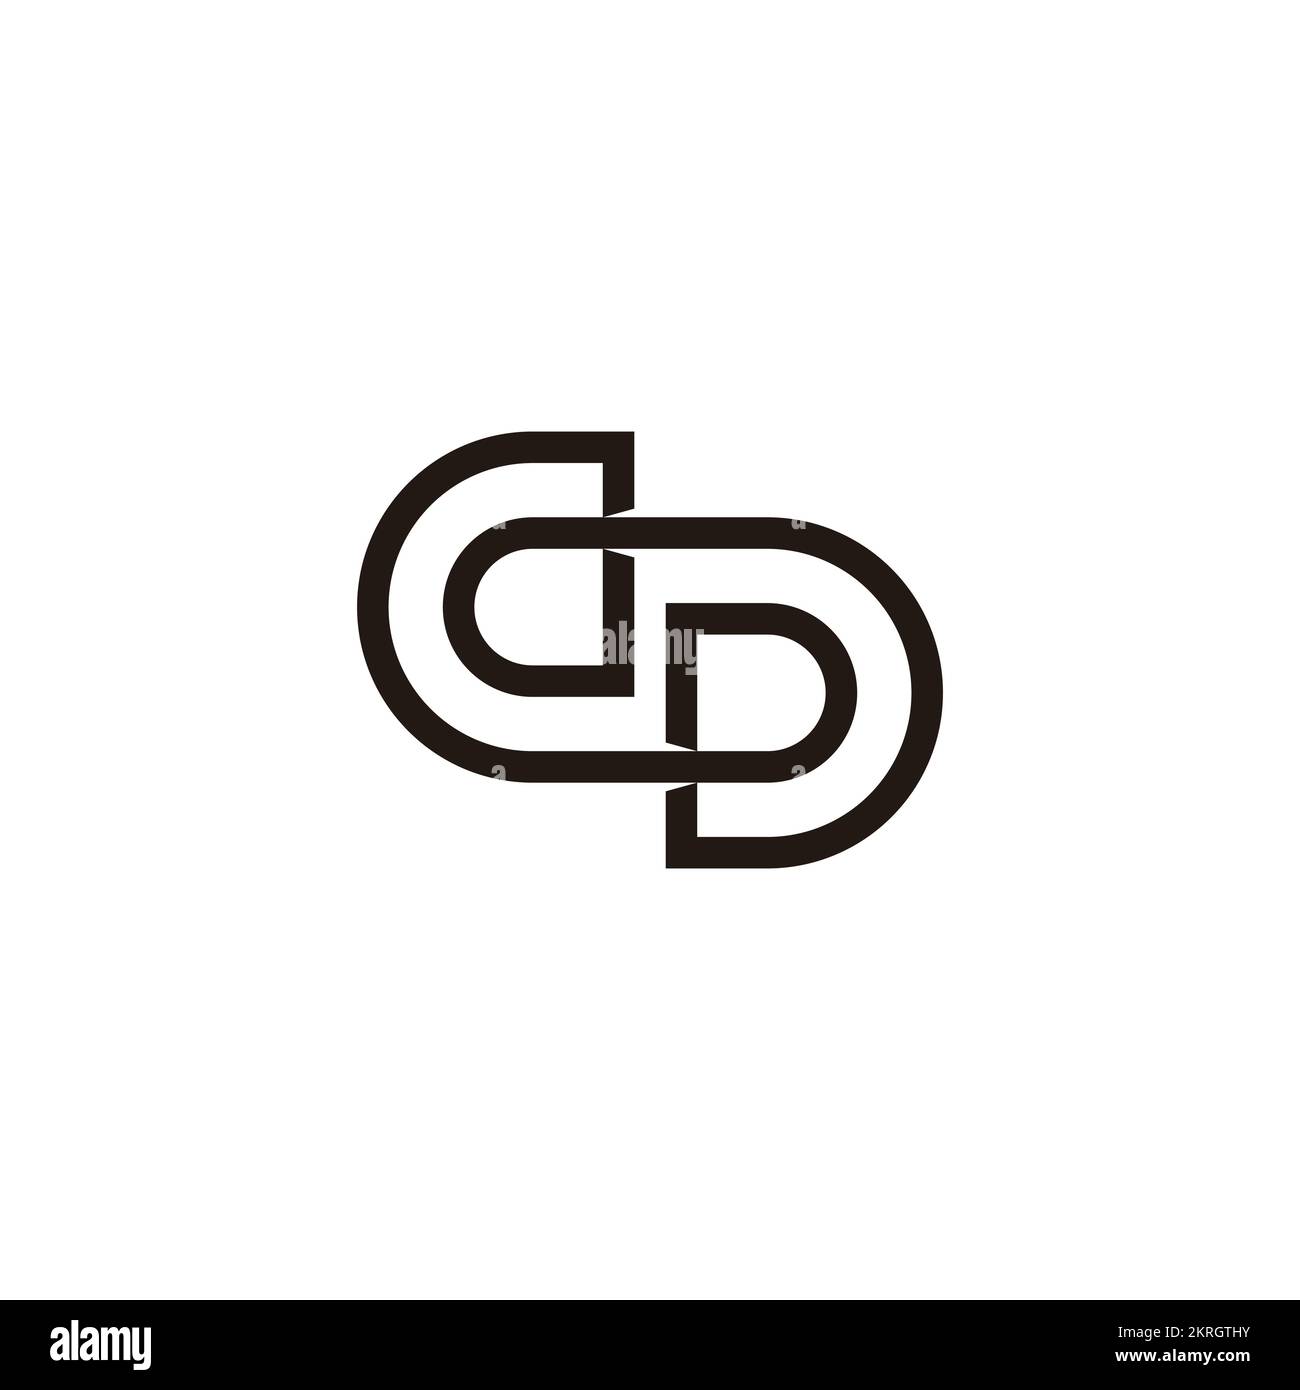 Exclusive Logo 677278, Double O or DP Infinity Logo